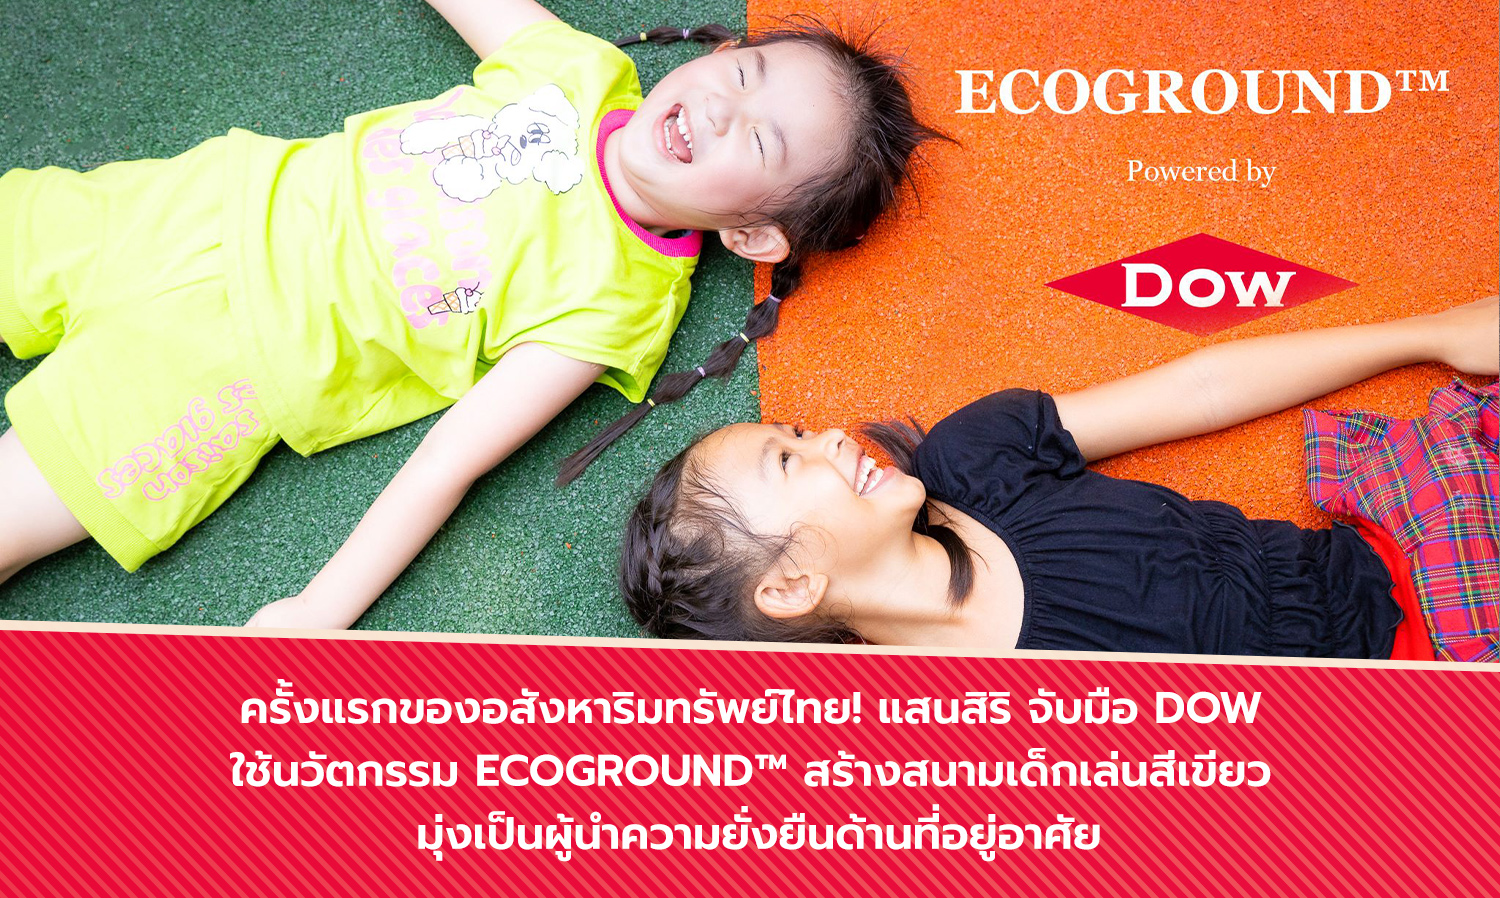 ครั้งแรกของอสังหาริมทรัพย์ไทย! แสนสิริ จับมือ Dow ใช้นวัตกรรม ECOGROUND™สร้างสนามเด็กเล่นสีเขียว มุ่งเป็นผู้นำความยั่งยืนด้านที่อยู่อาศัย